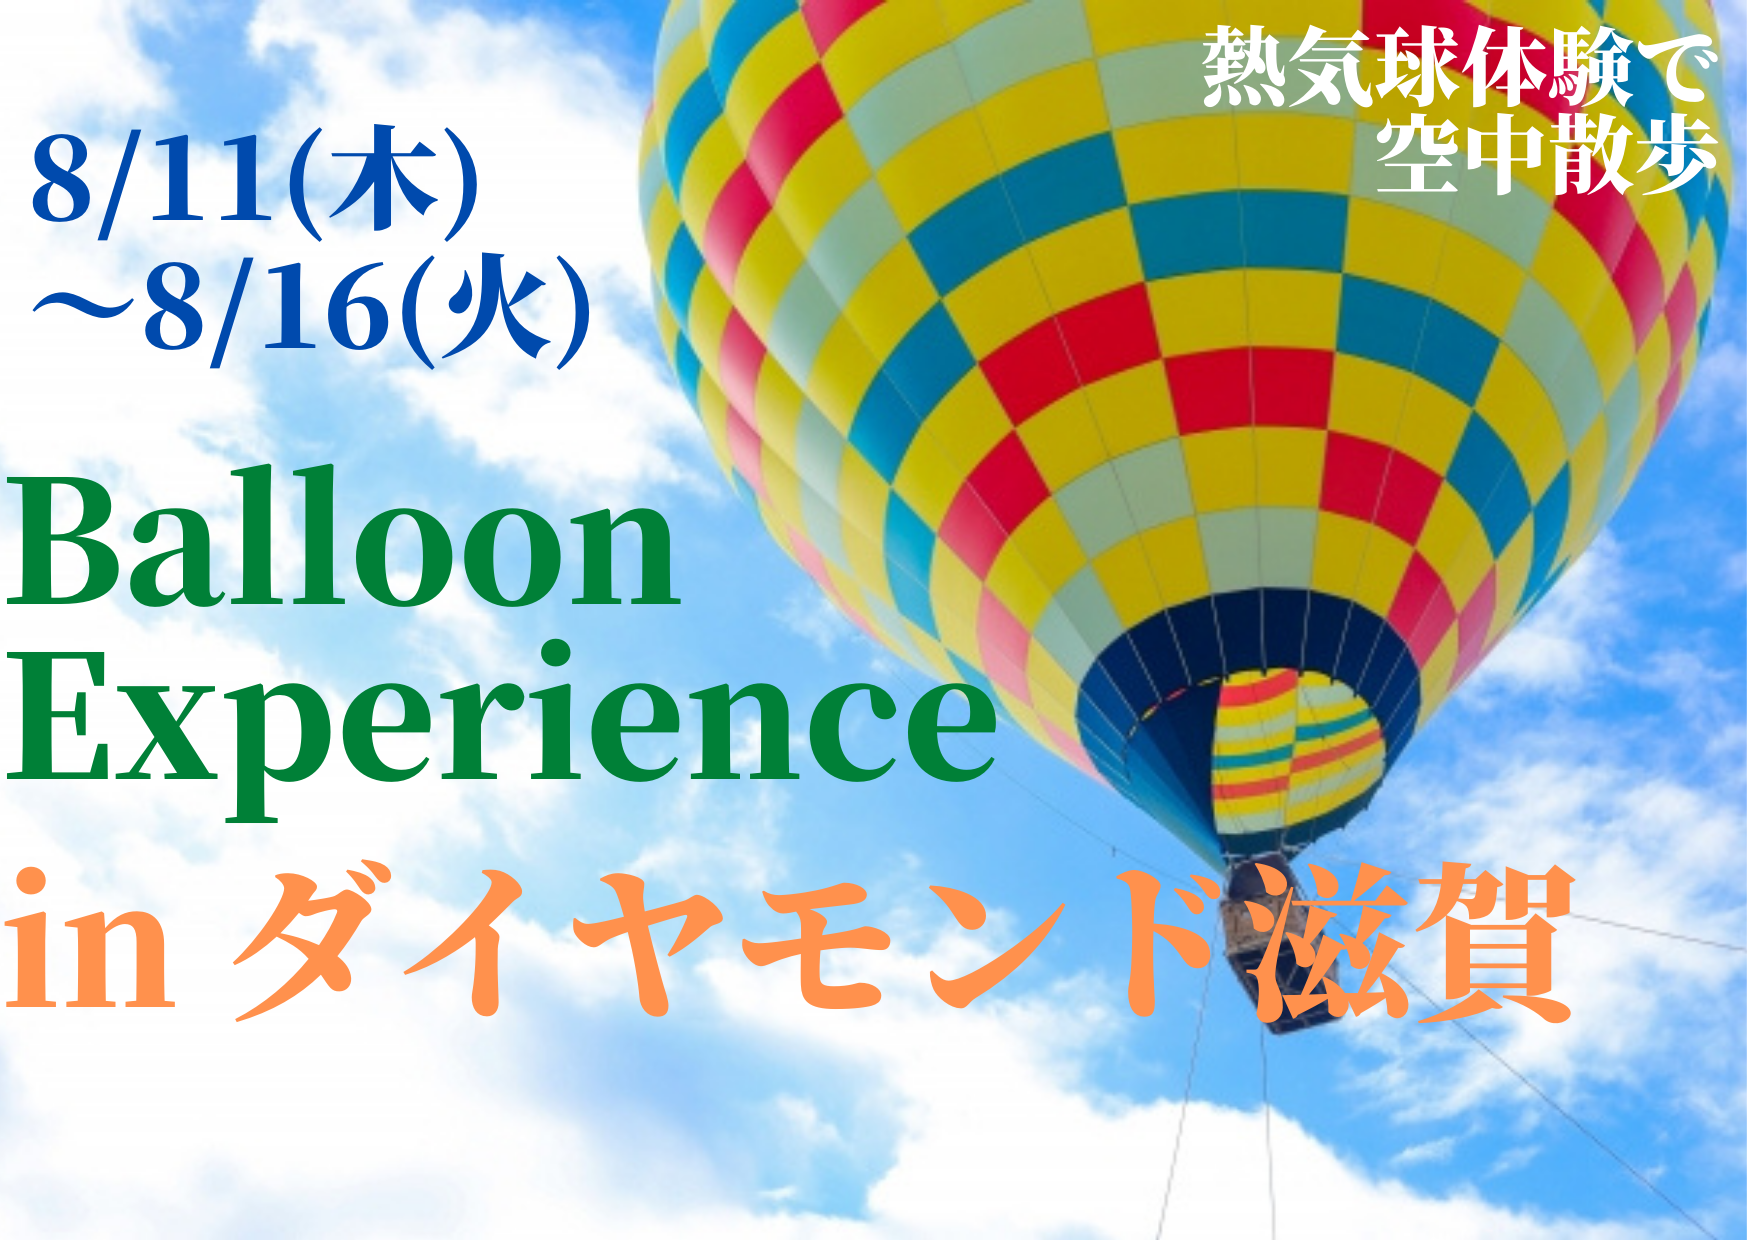 【8/11(木)〜16(火)】熱気球体験【Balloon Experience in ダイヤモンド滋賀】地上20〜30mの空中散歩